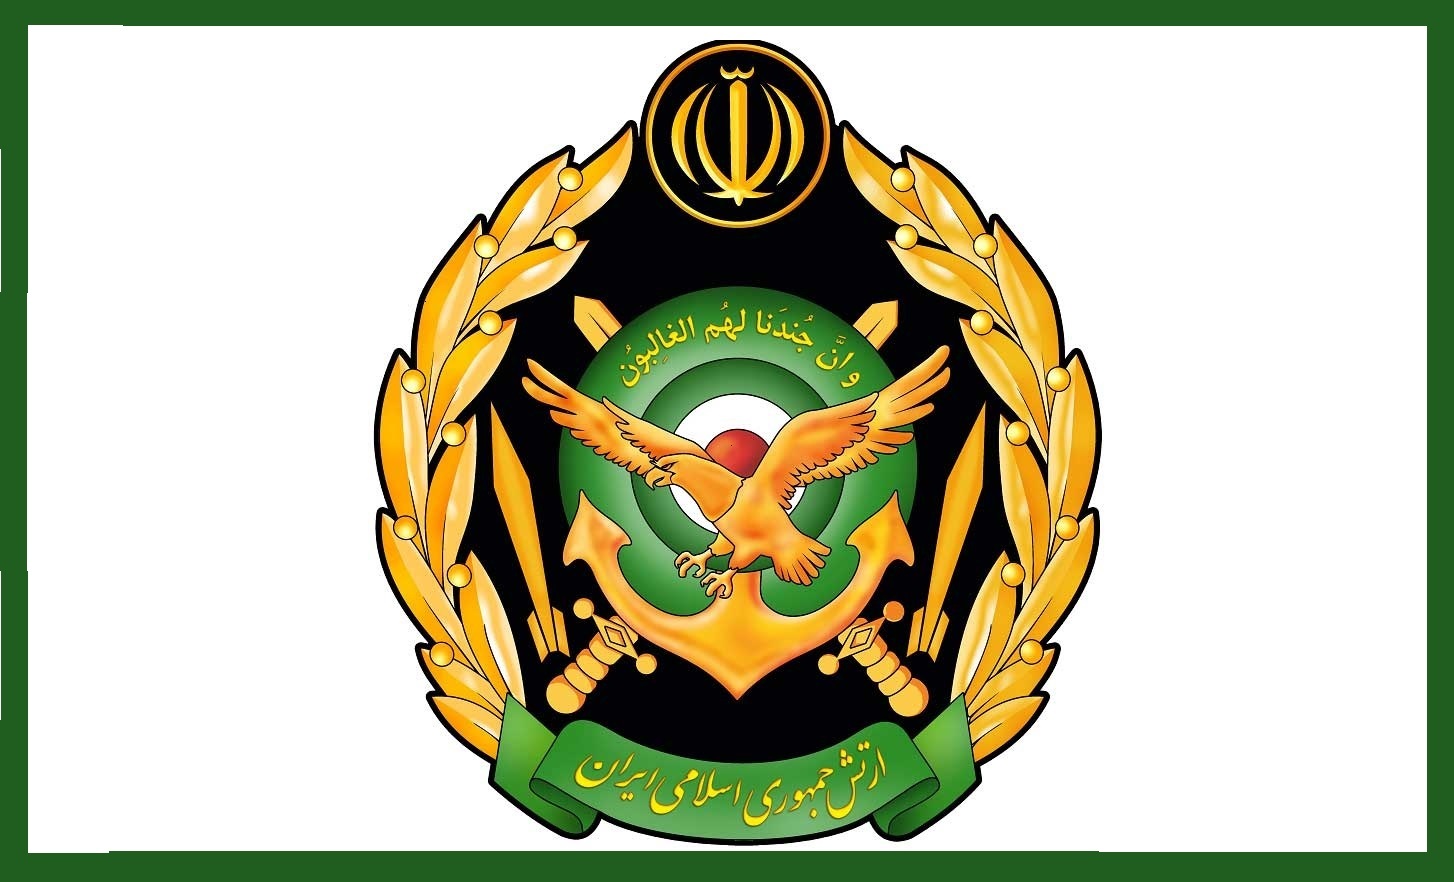 دعوت ارتش جمهوری اسلامی ایران از مردم برای شرکت در راهپیمایی روز جمعه